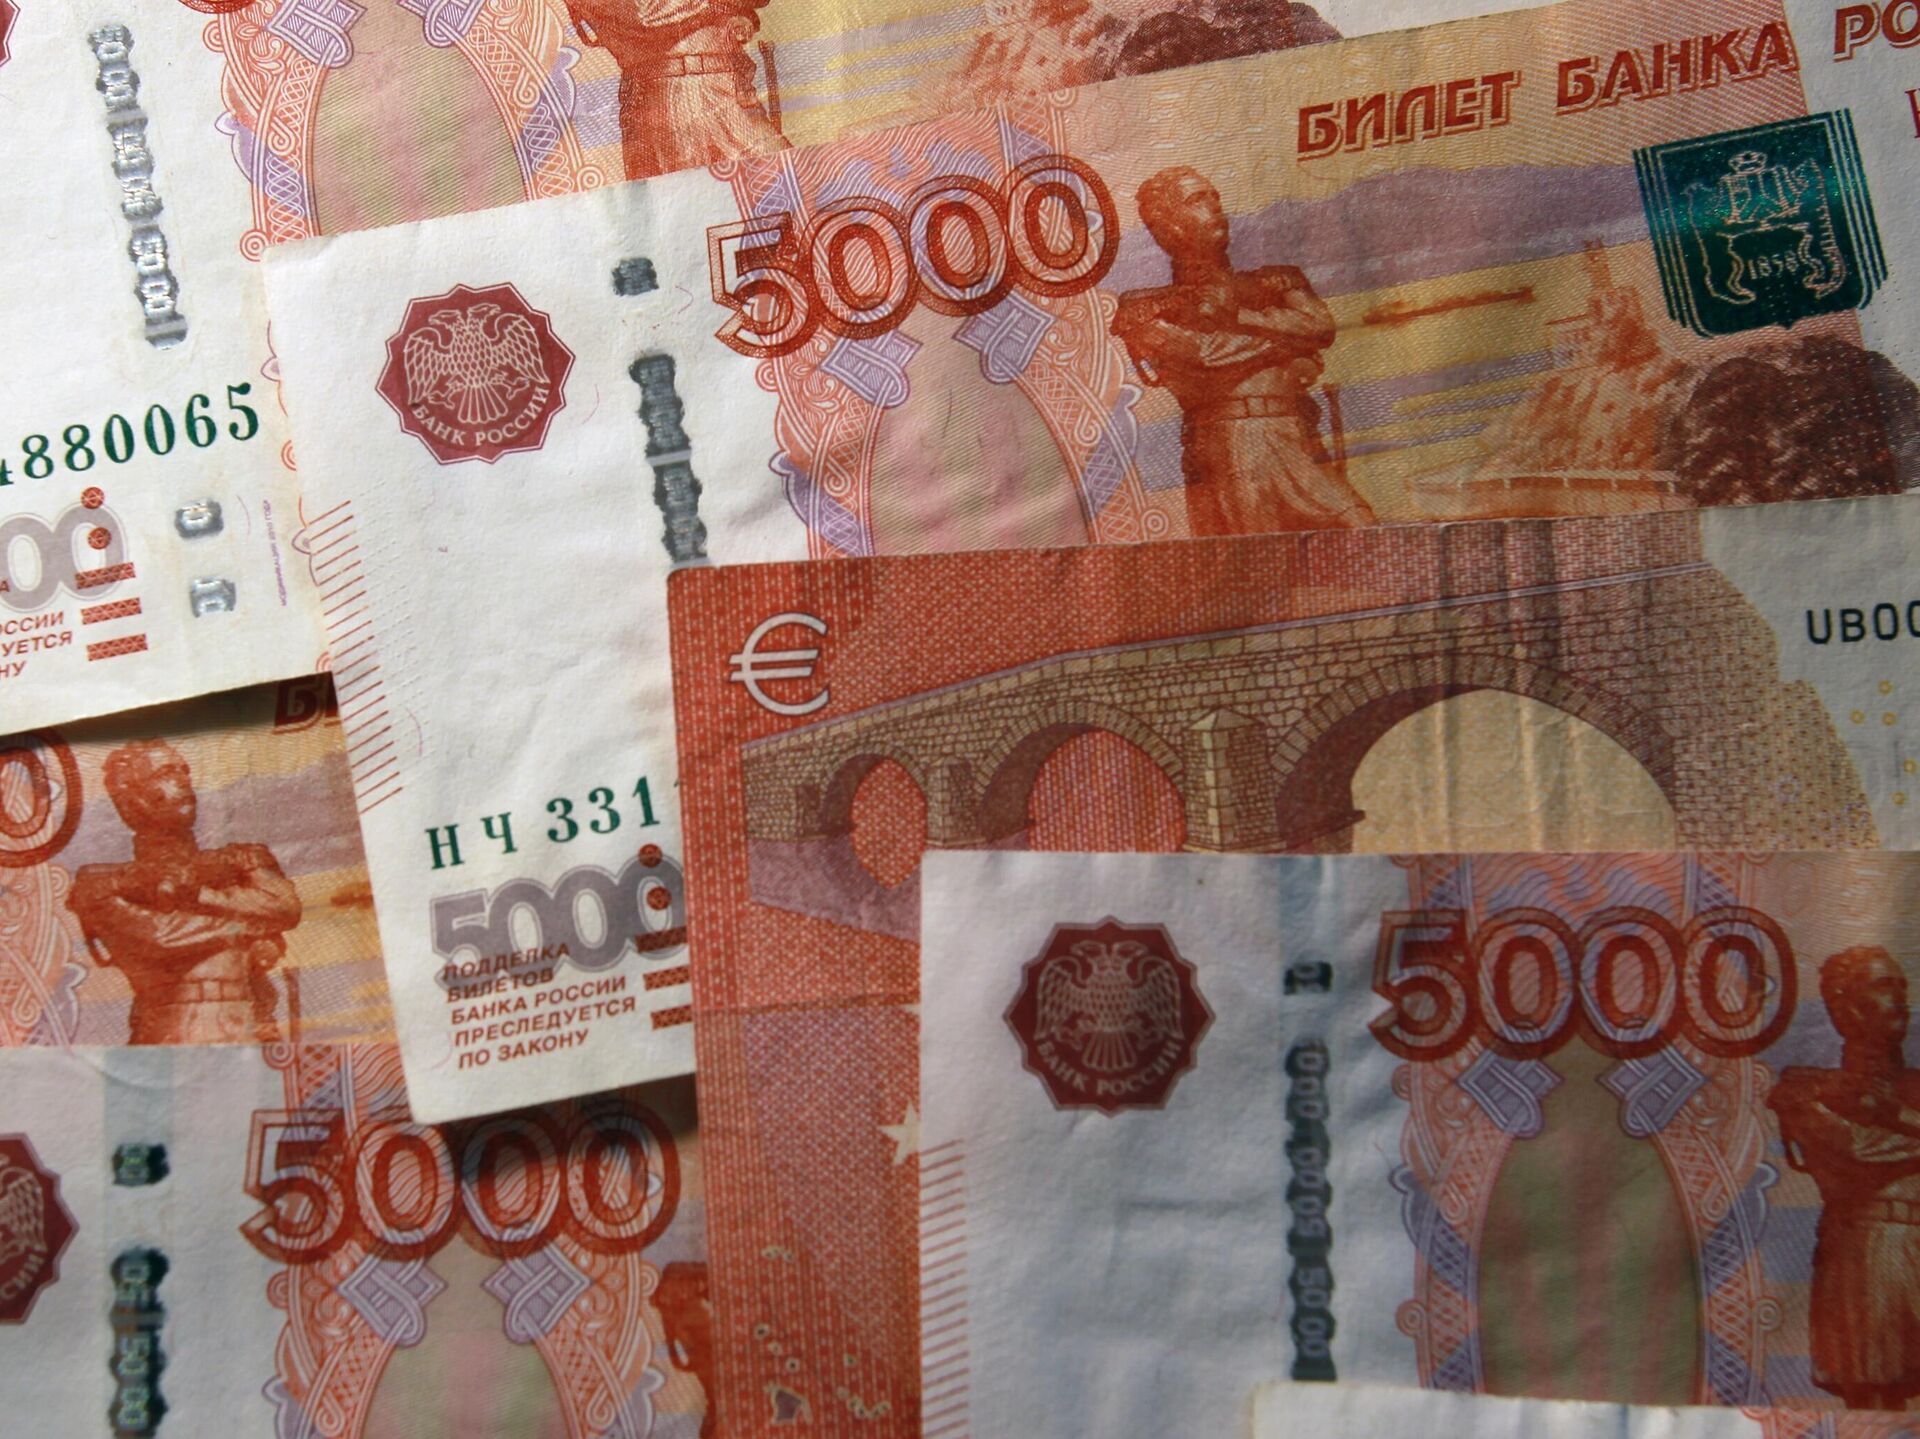 Номиналом 5000 рублей